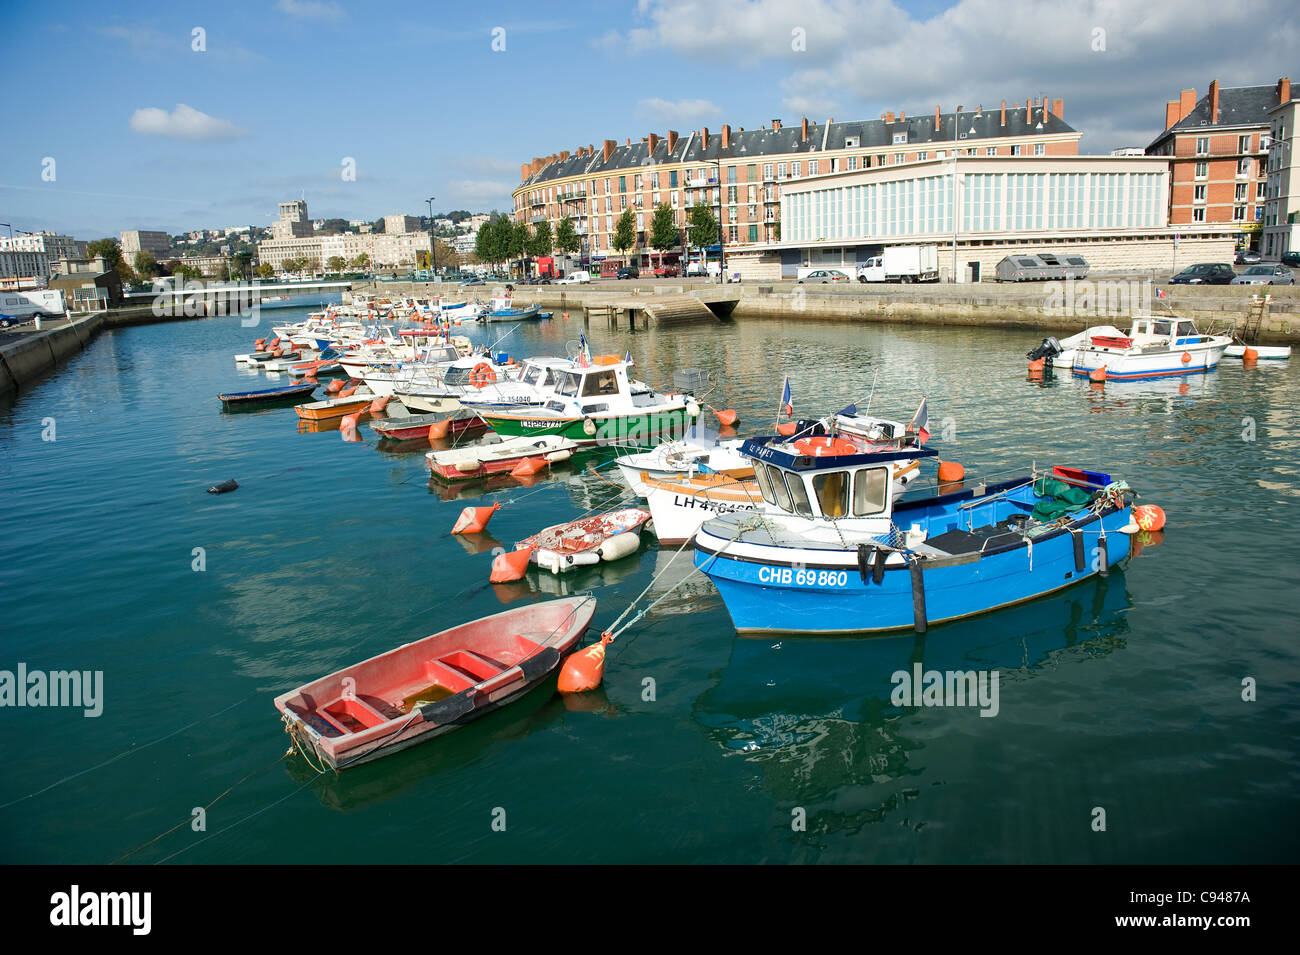 Les bateaux de pêche et bateaux à moteur dans le bassin du roi, le plus ancien port de UNESCO world heritage Le Havre en Normandie, France Banque D'Images